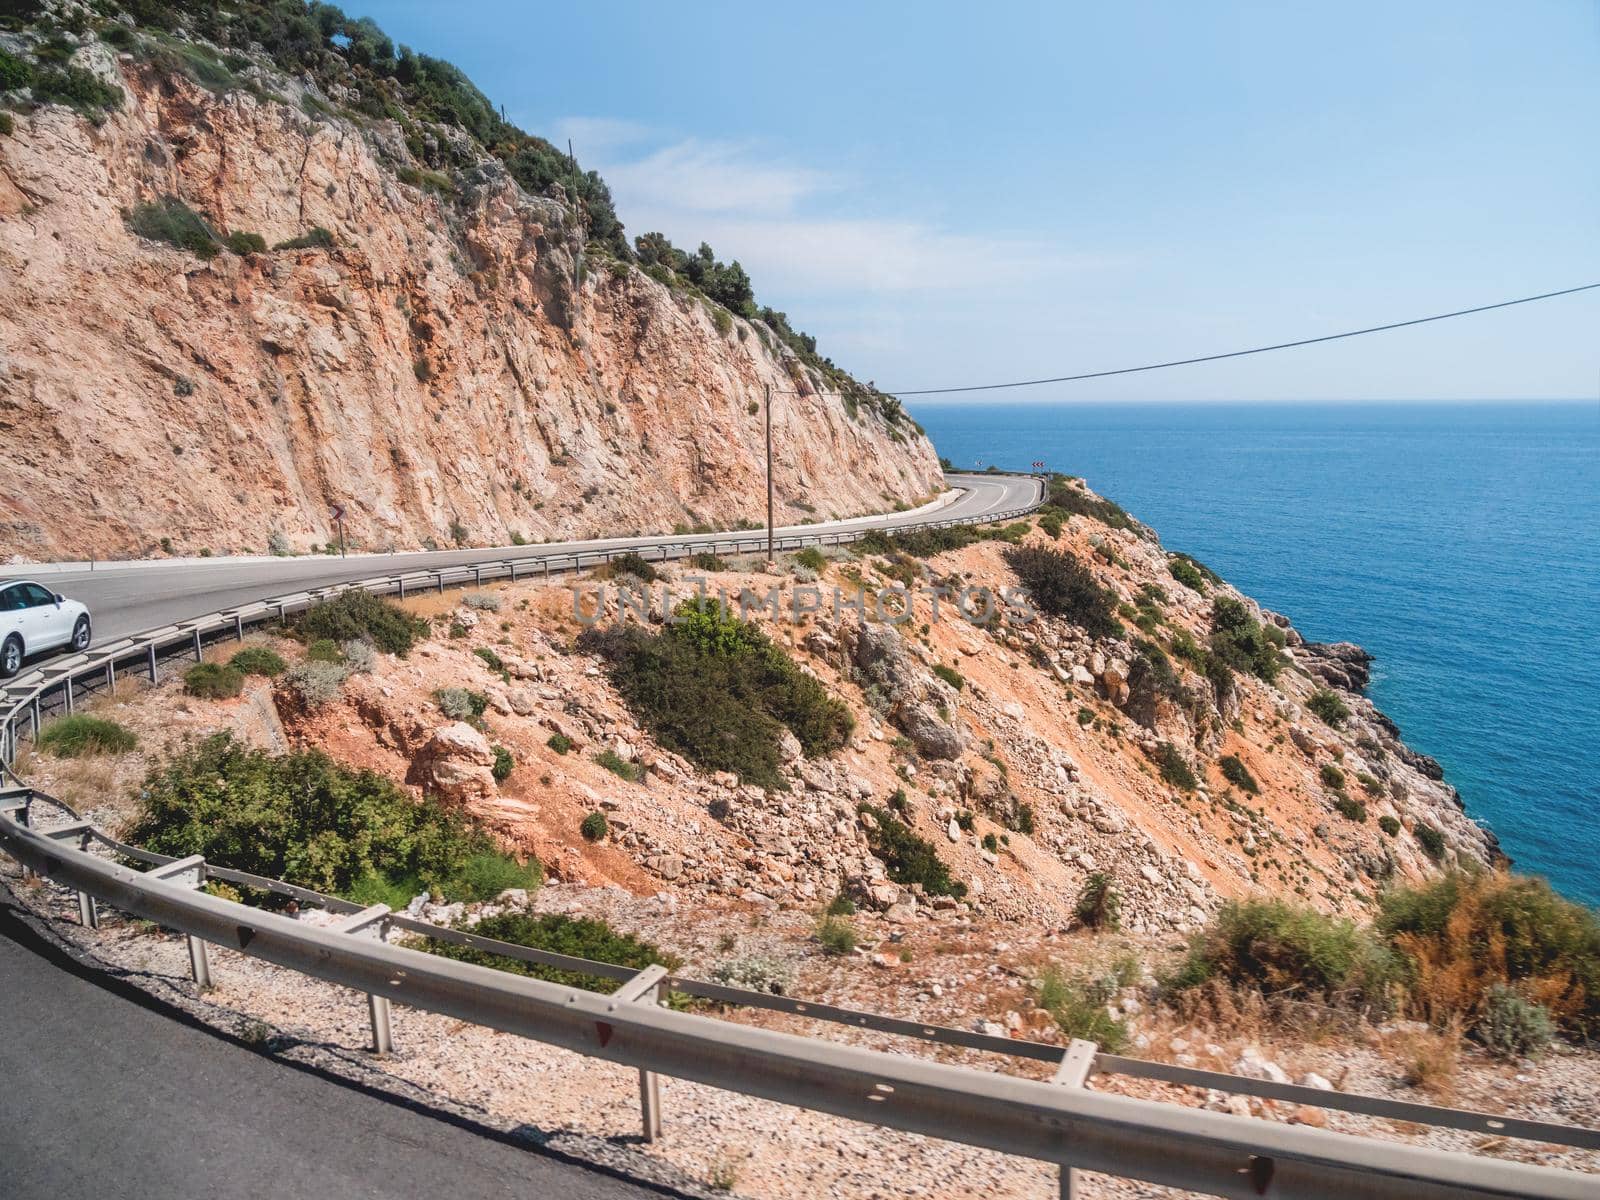 Mountain serpentine road along Mediterranean sea. Demre Finike Yolu road . Turkey.